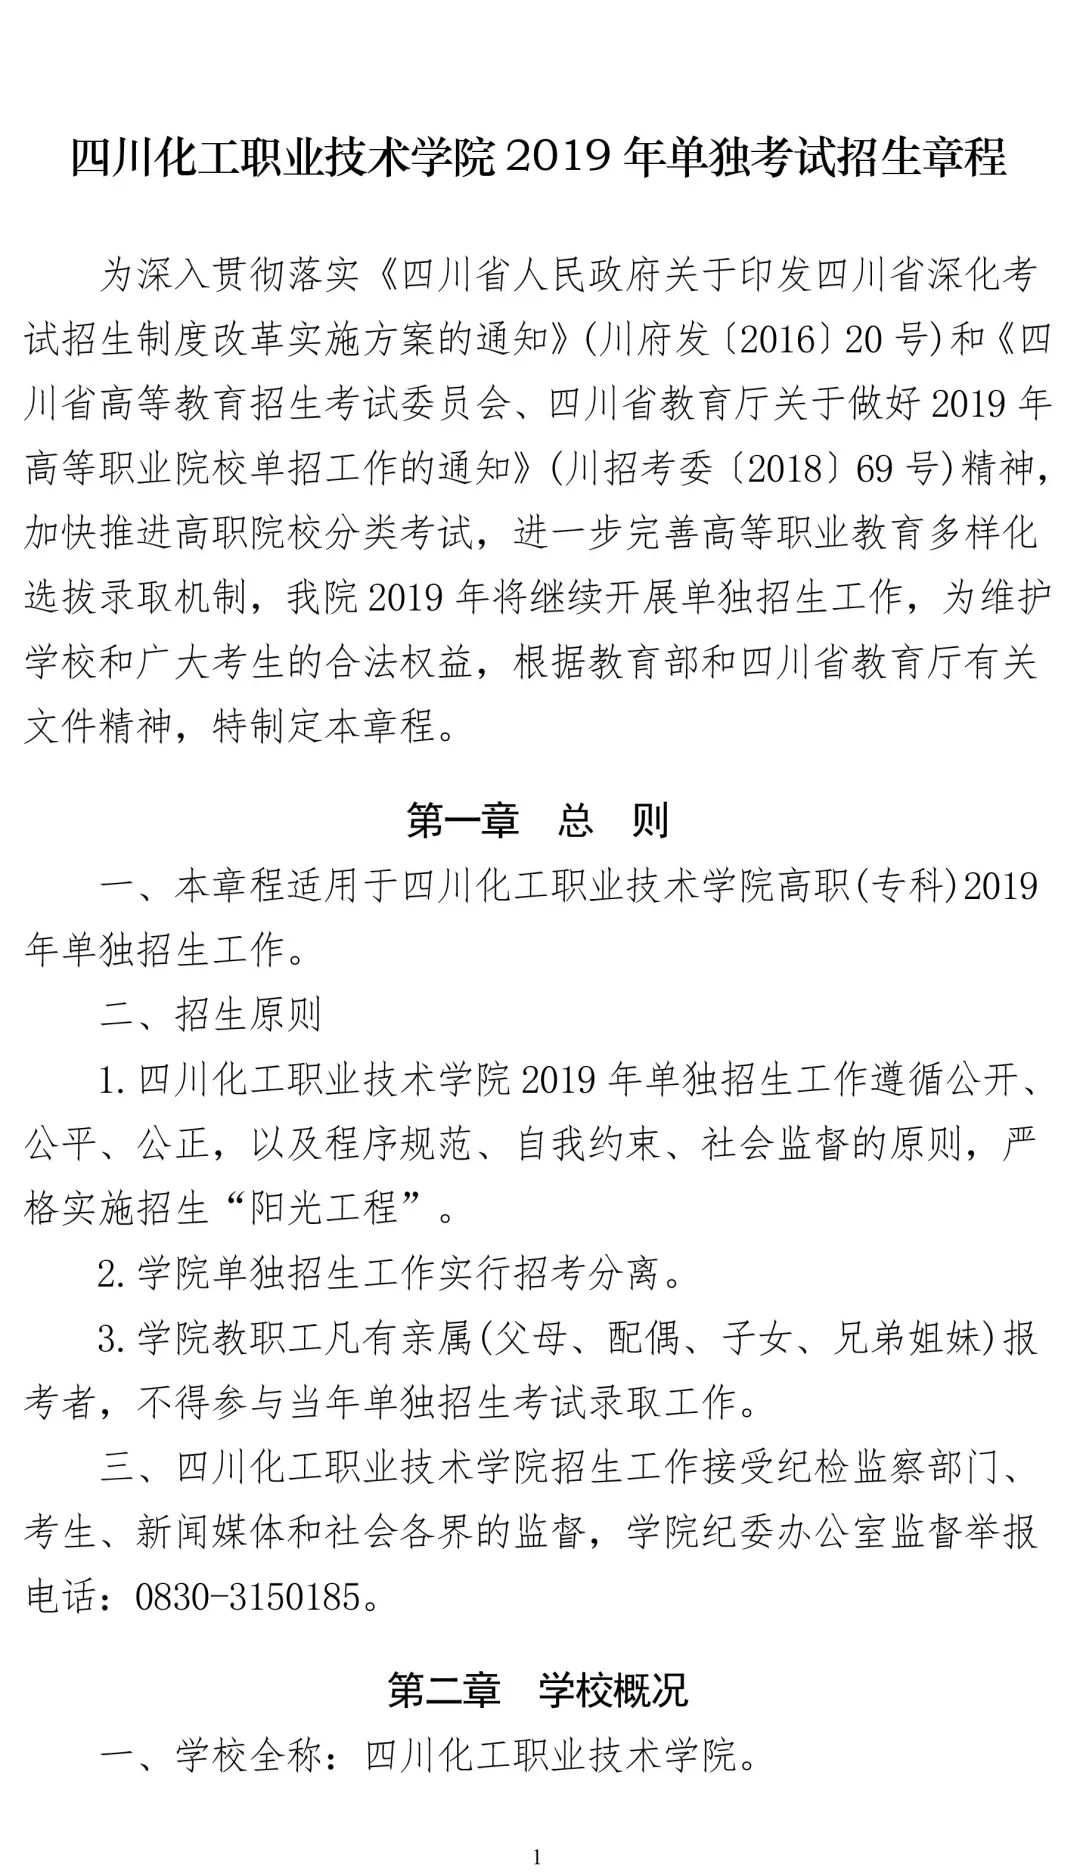 四川化工职业技术学院2019年单独考试招生章程